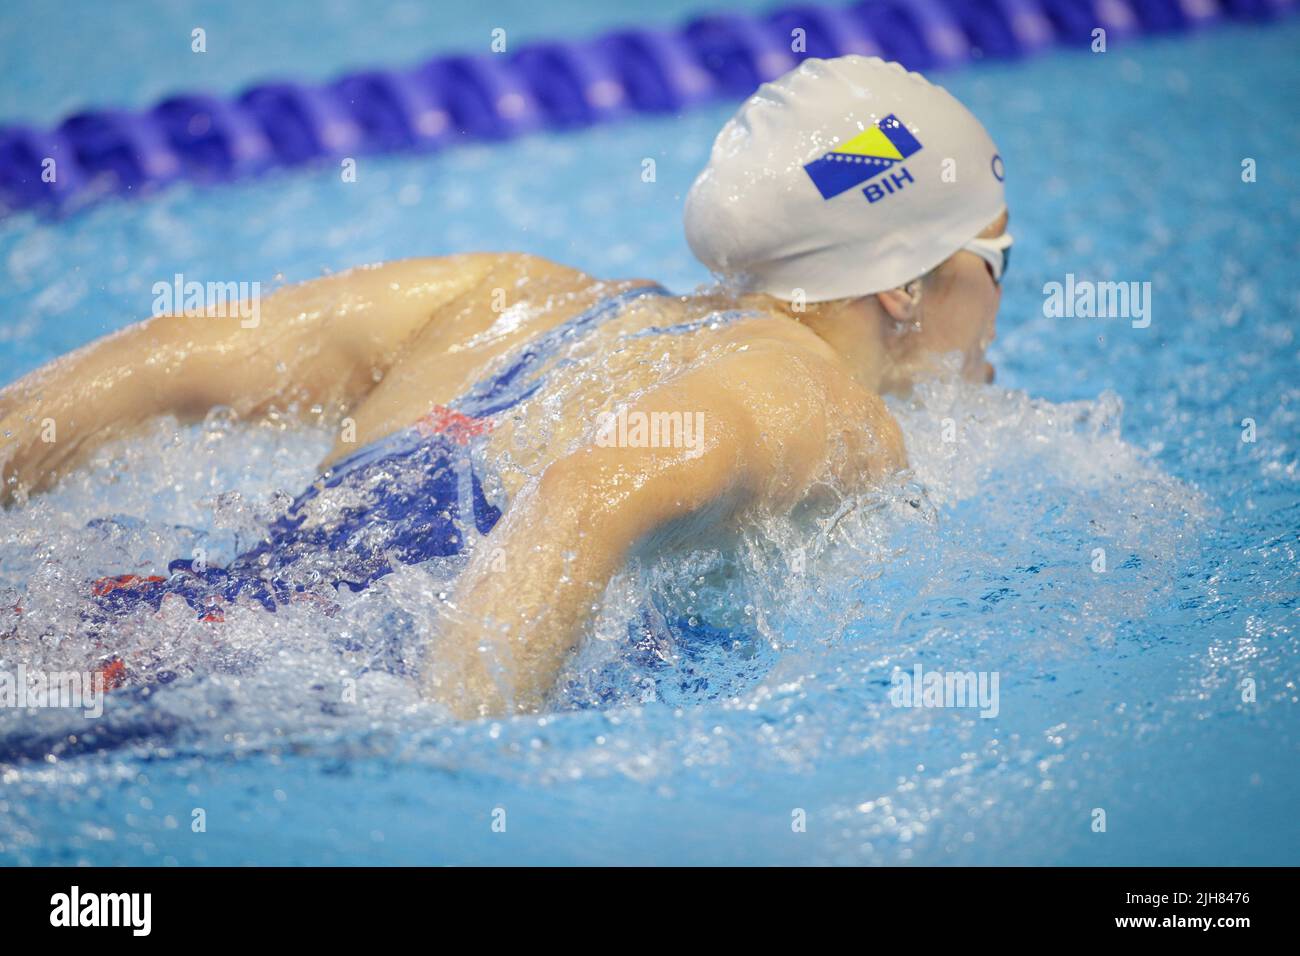 Otopeni, Romania - 8 luglio 2022: Dettagli con un atleta professionista israeliano nuoto femminile in una piscina olimpionica farfalla stile. Atleta femminile Foto Stock